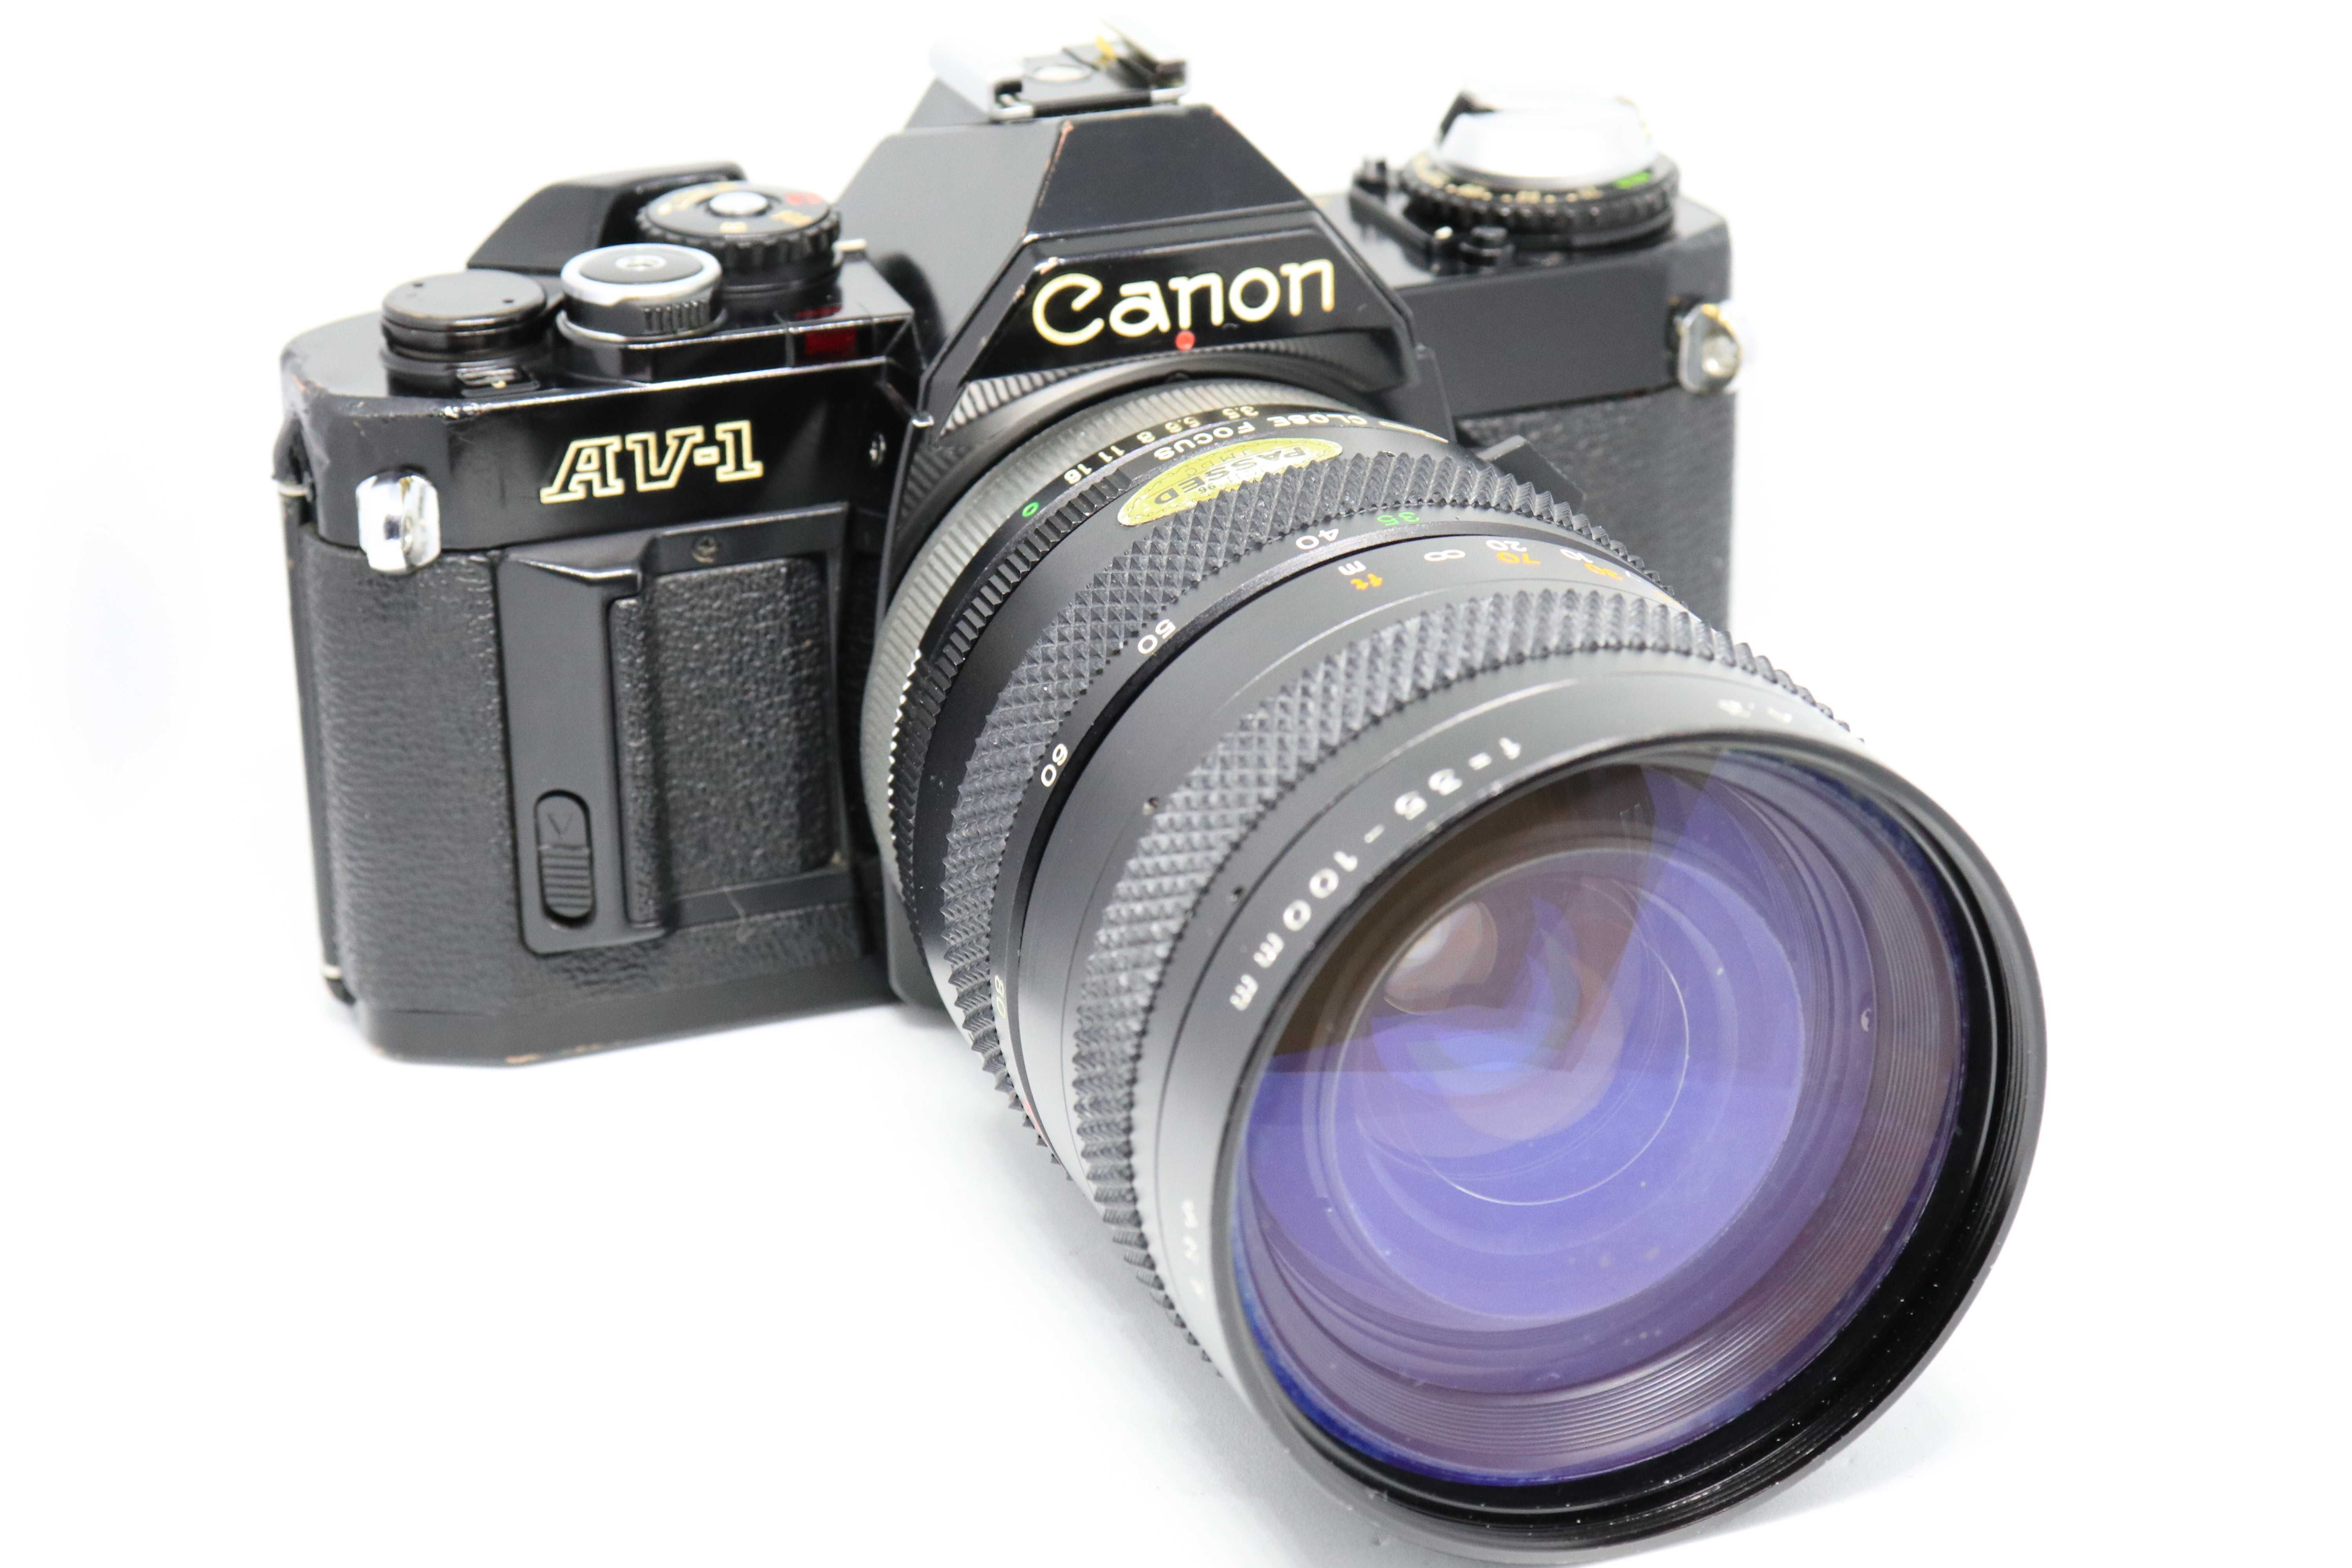 SLR Canon AV-1 + Zoom FD 35-100mm (a funcionar)